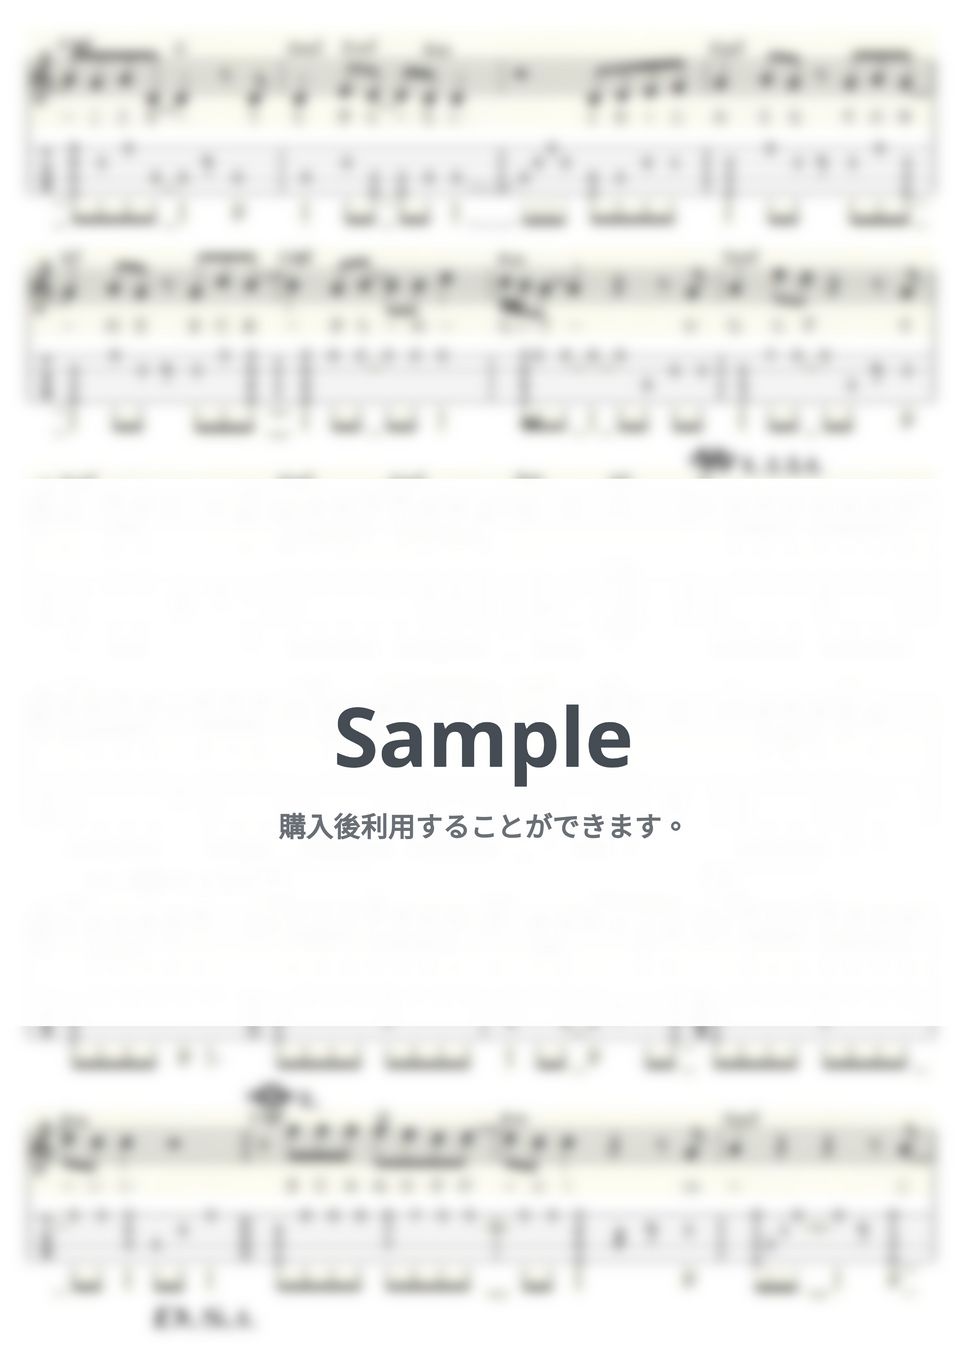 小田和正 - キラキラ (ｳｸﾚﾚｿﾛ/High-G・Low-G/中級) by ukulelepapa